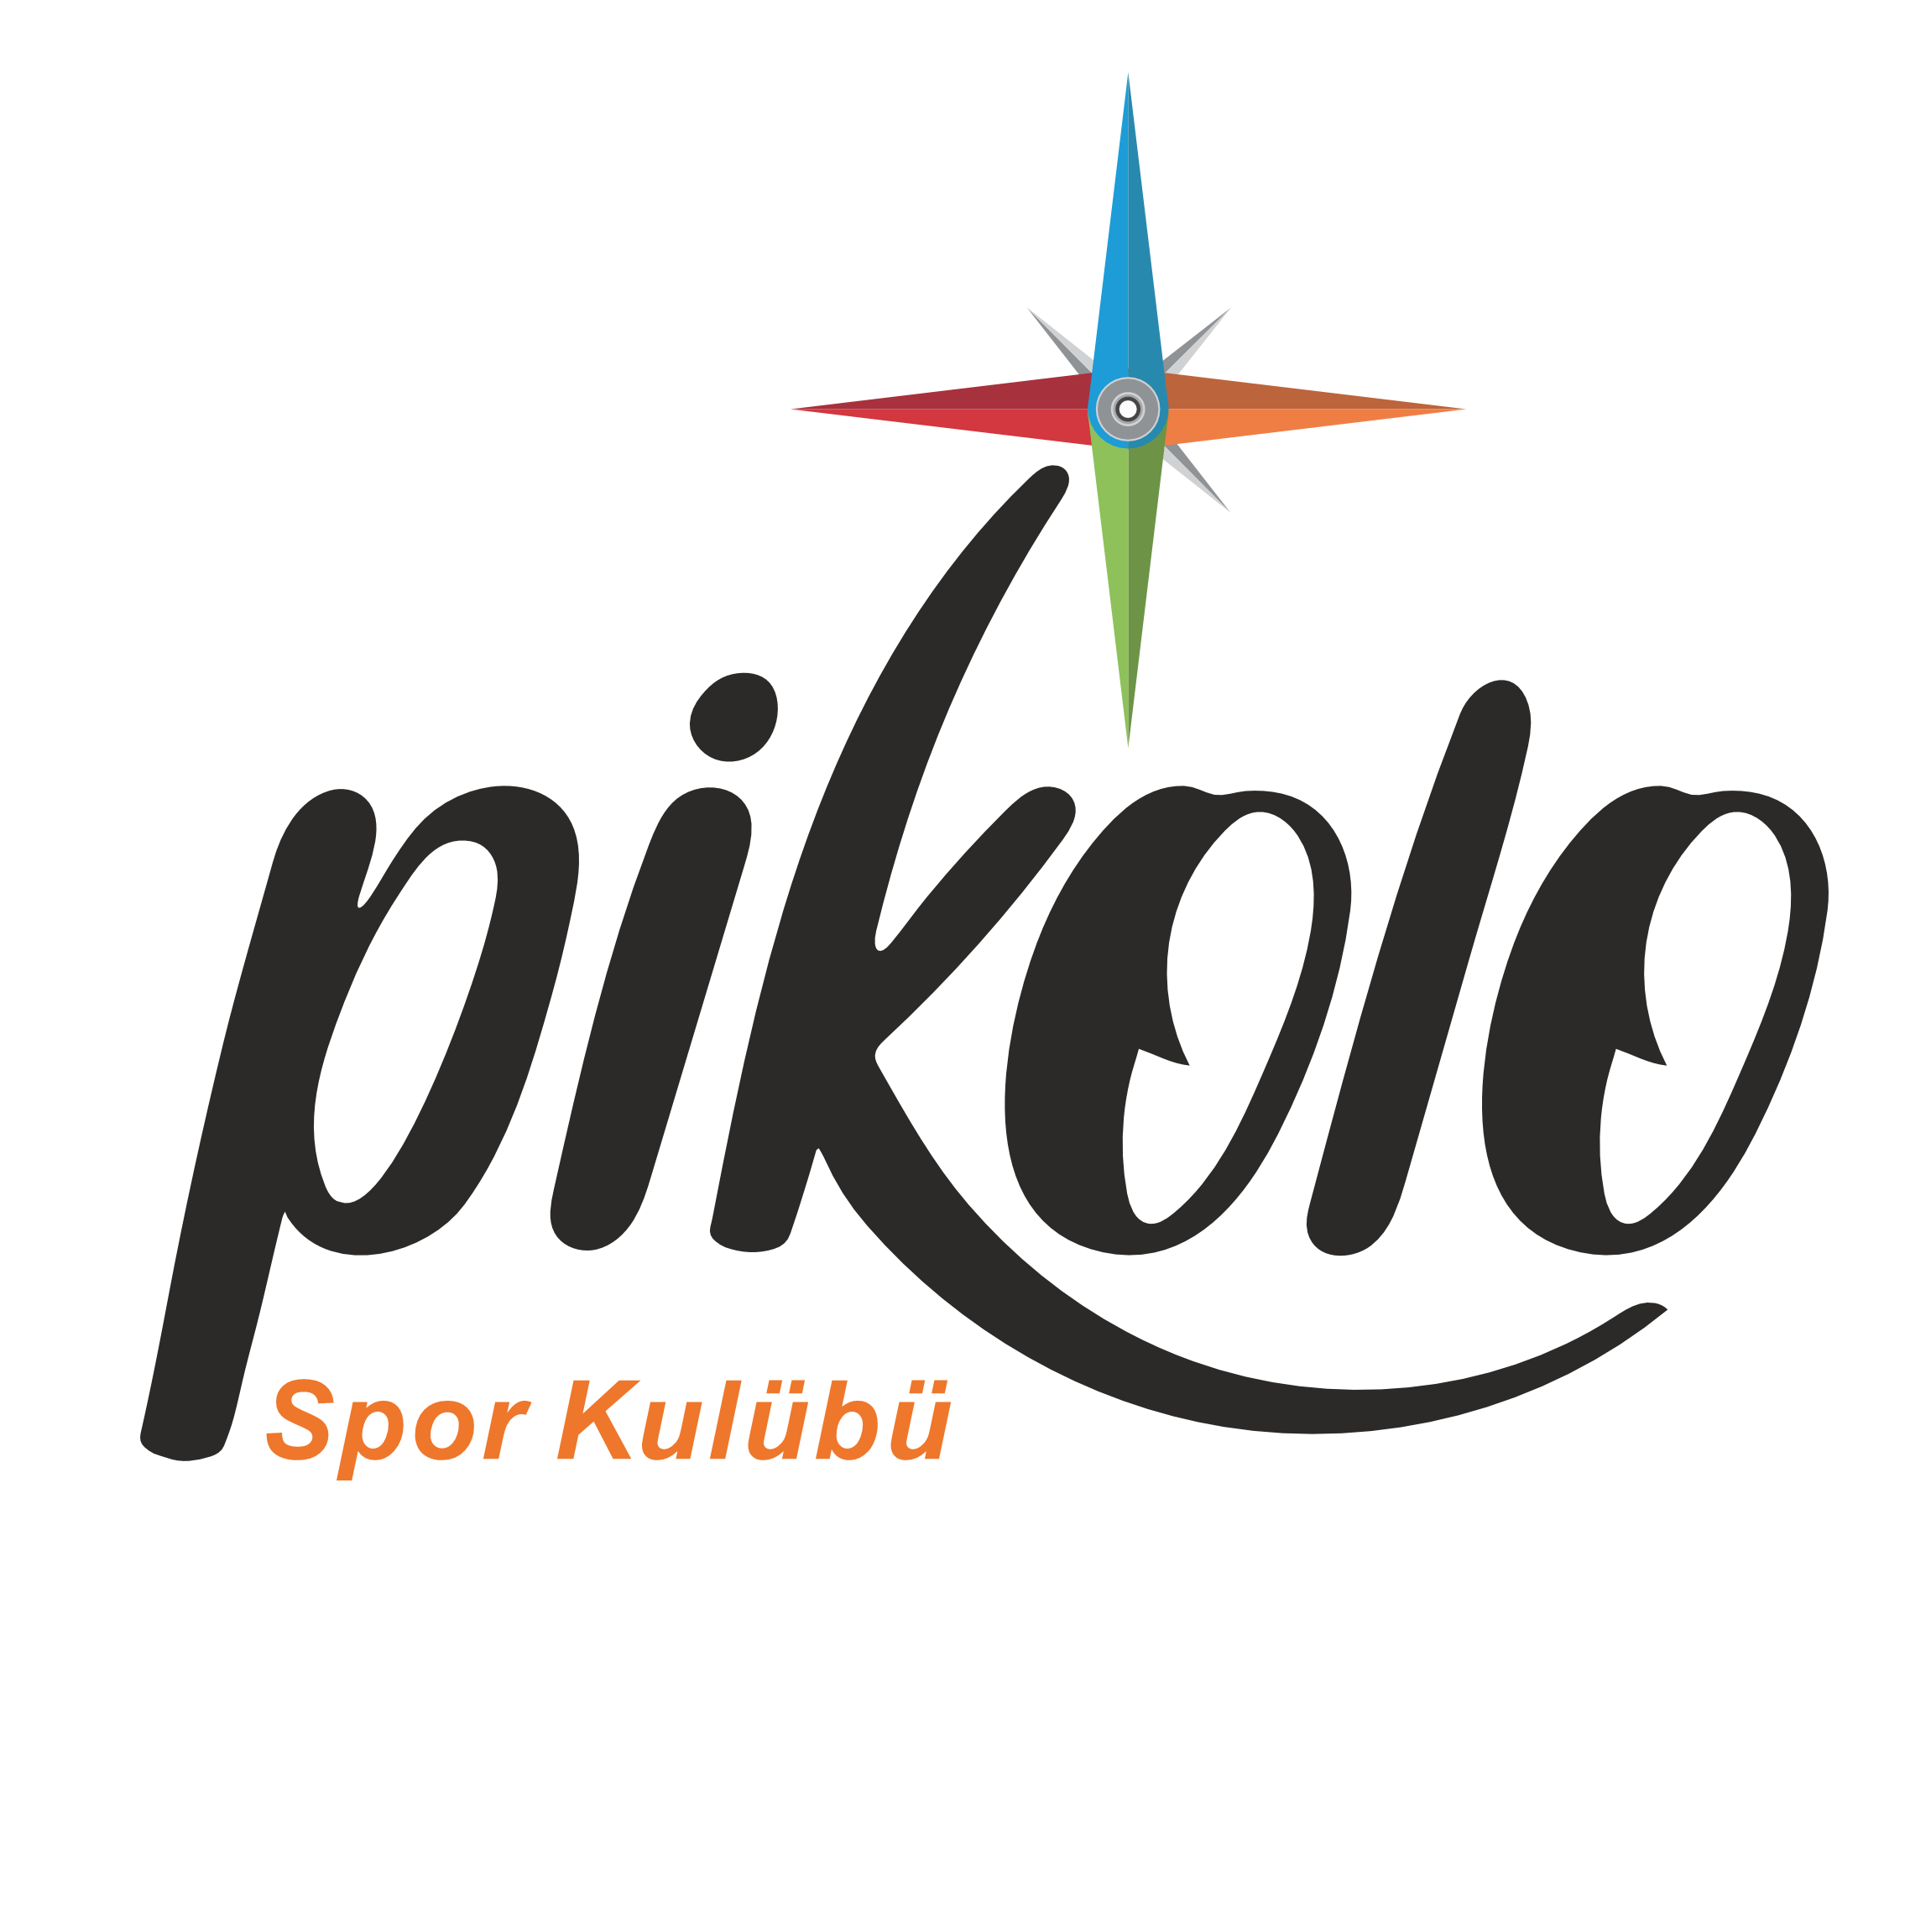 Pikolo Spor Kulübü